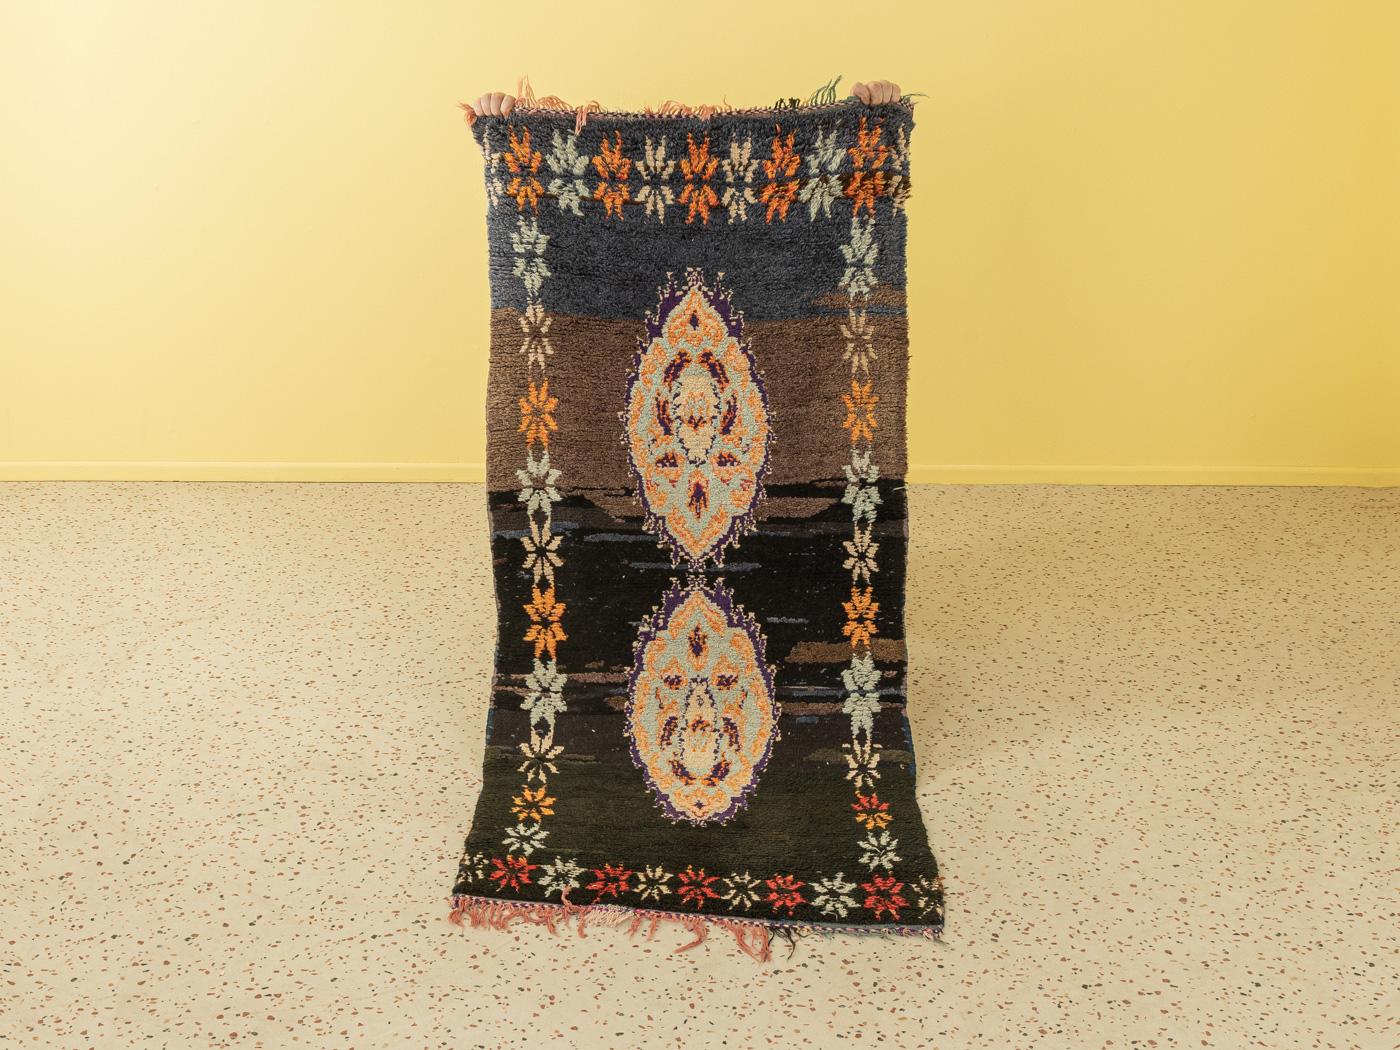 Ce tapis Vintage Azilal est un tapis 100 % laine - doux et confortable sous le pied. Nos tapis berbères sont fabriqués à la main, un nœud à la fois. Chacun de nos tapis berbères est une pièce unique et durable, créée de manière durable avec de la